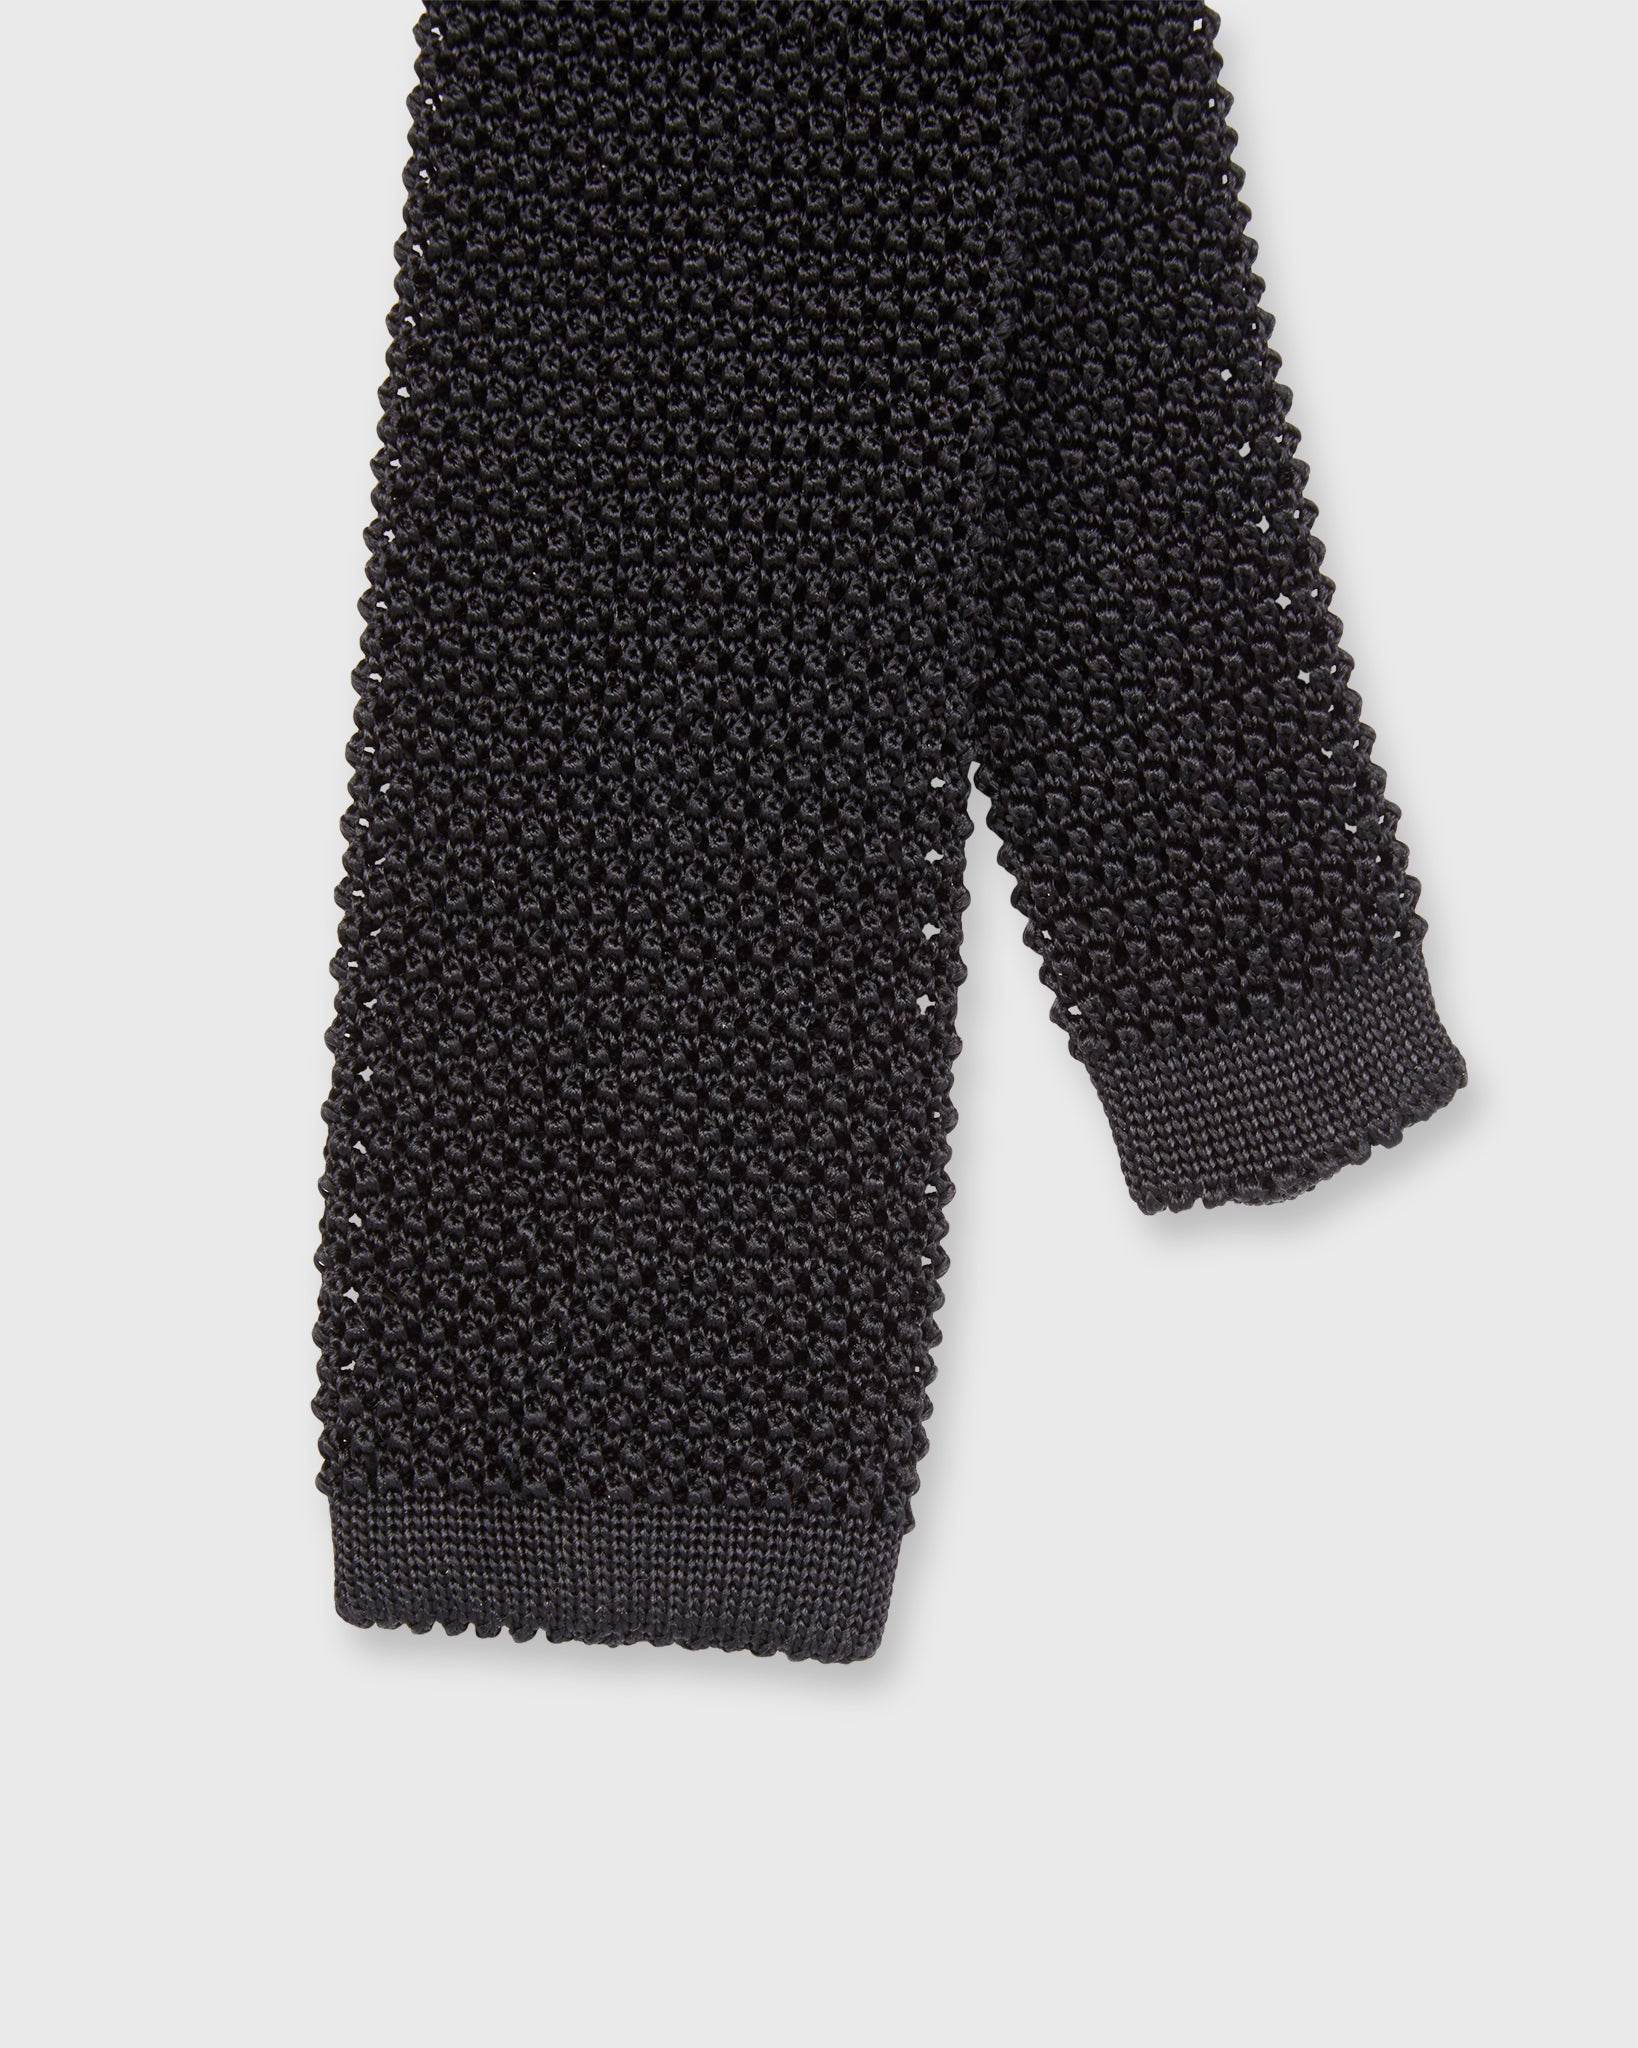 Silk Knit Tie in Black